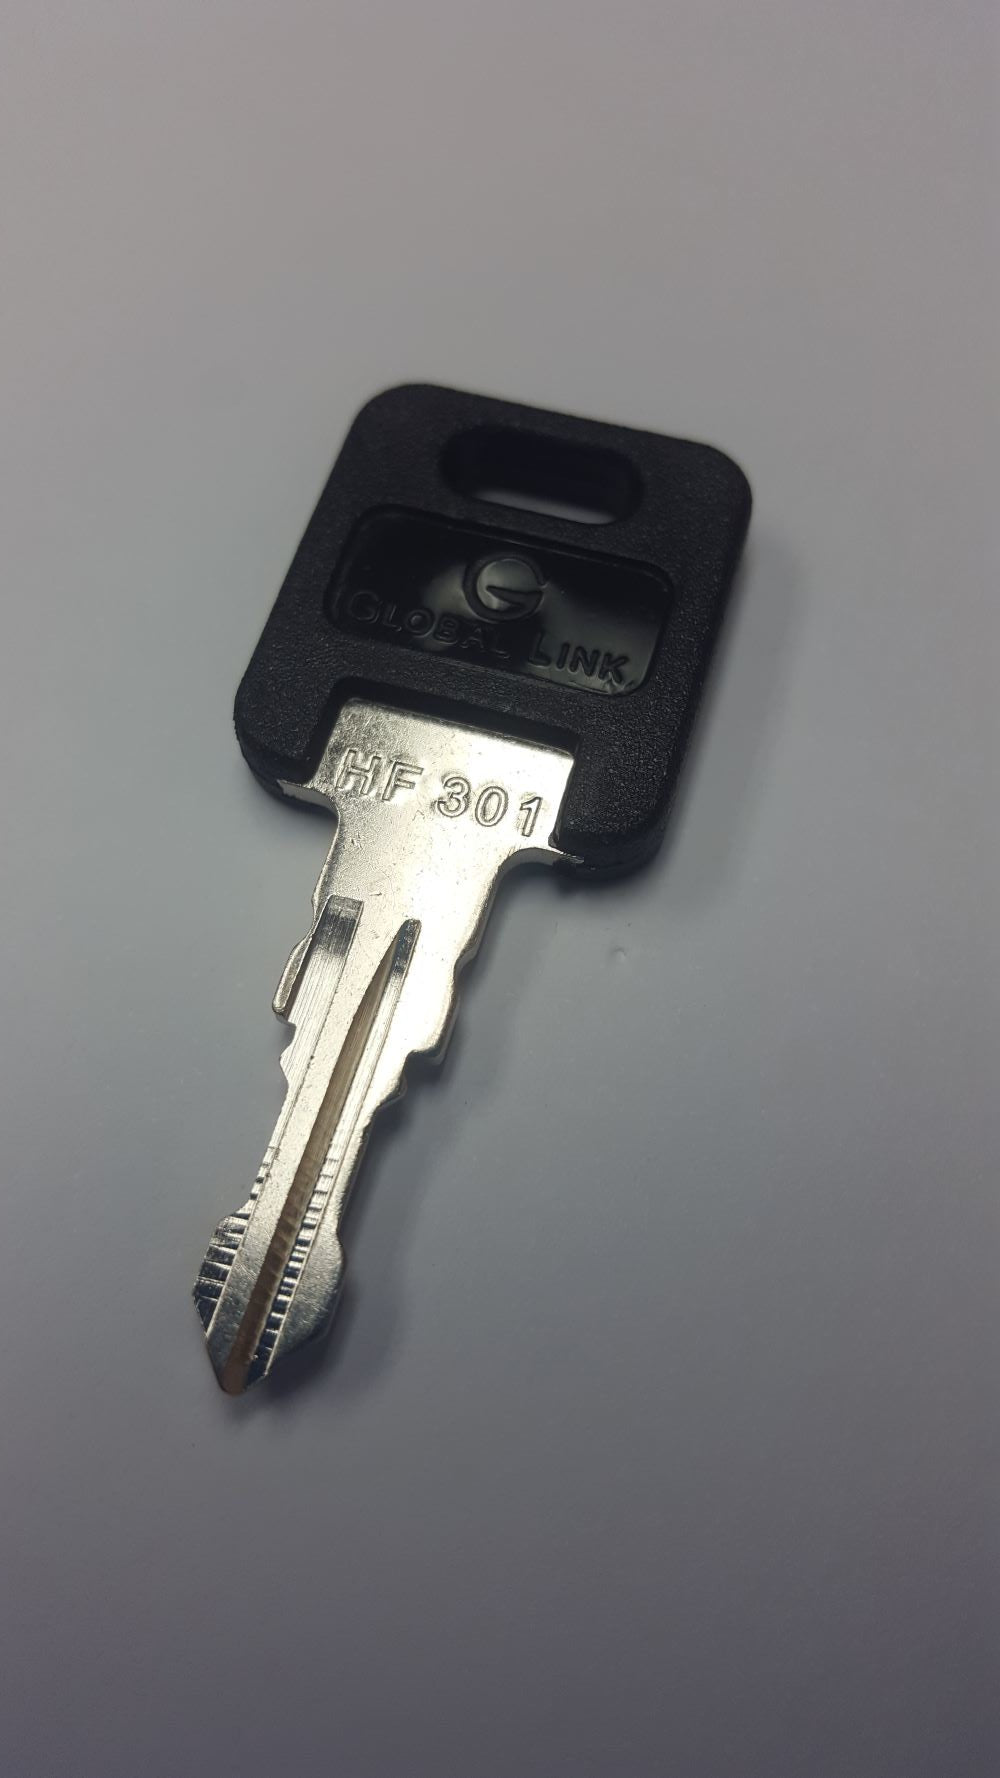 CPG KEY-HF-301 Pre-cut Stamped FIC Replacemnt HF301 Key